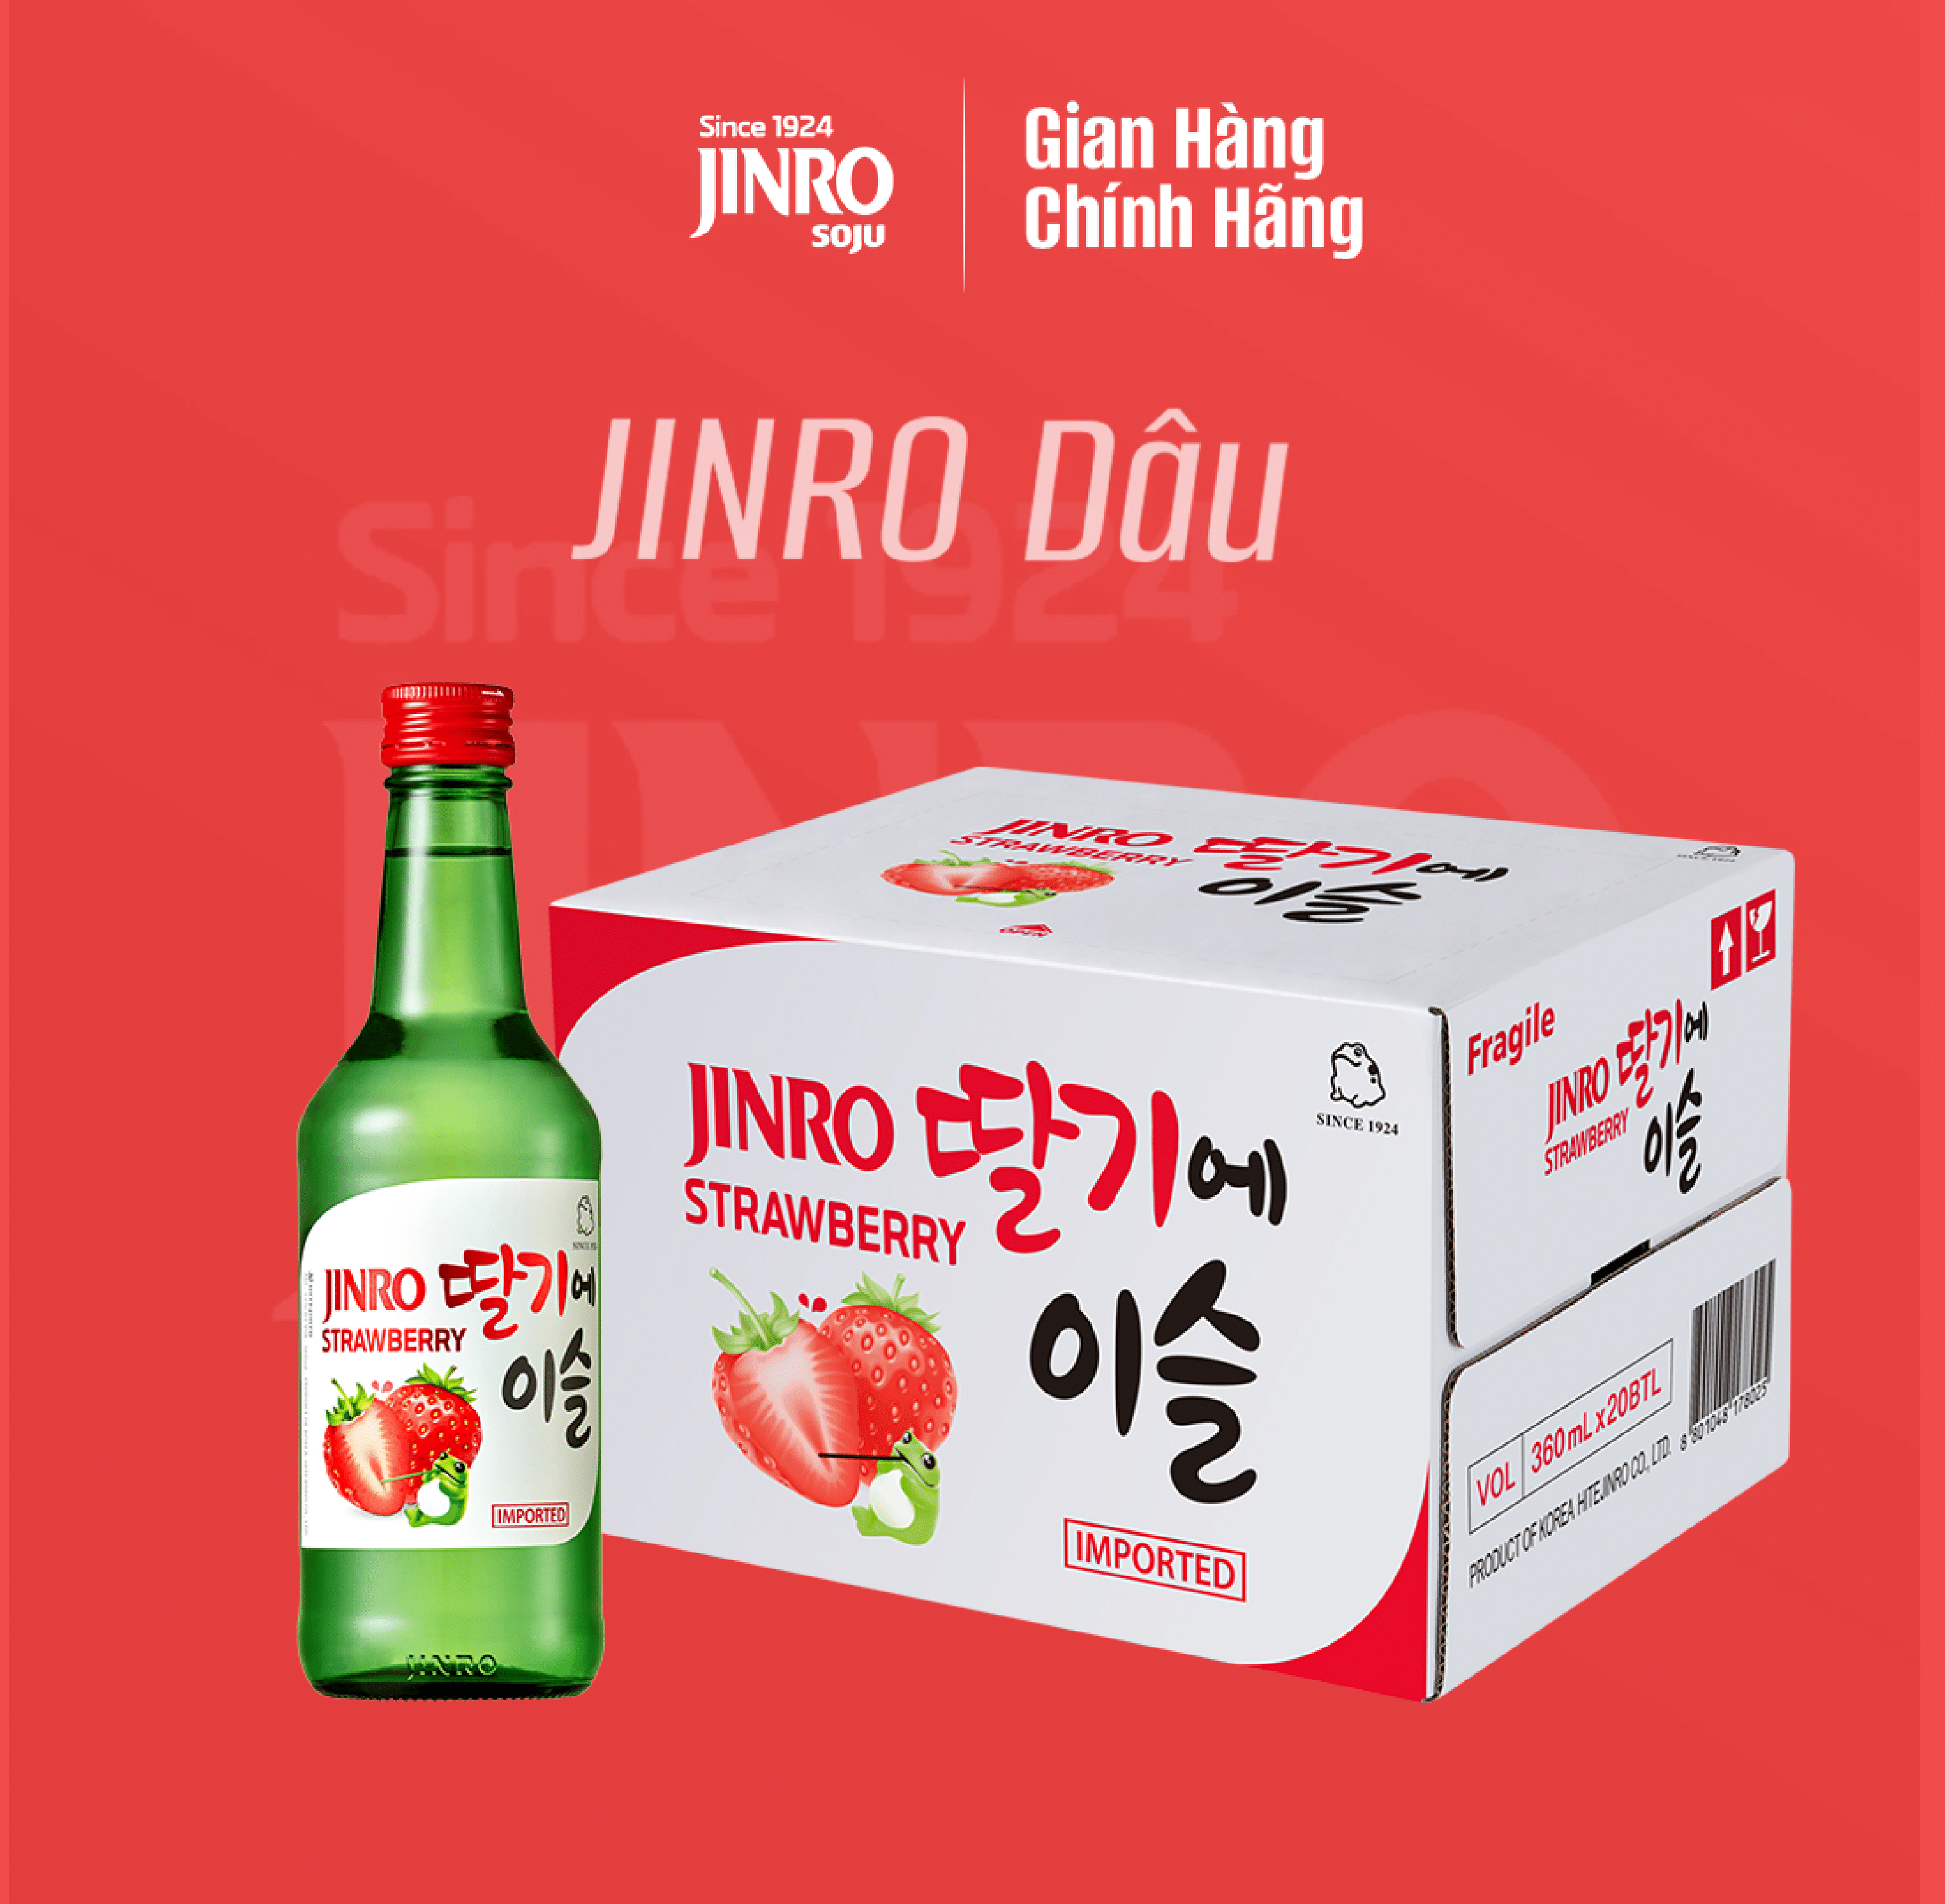 [CHÍNH HÃNG] Soju Hàn Quốc JINRO VỊ DÂU 360ml - Thùng 20 chai